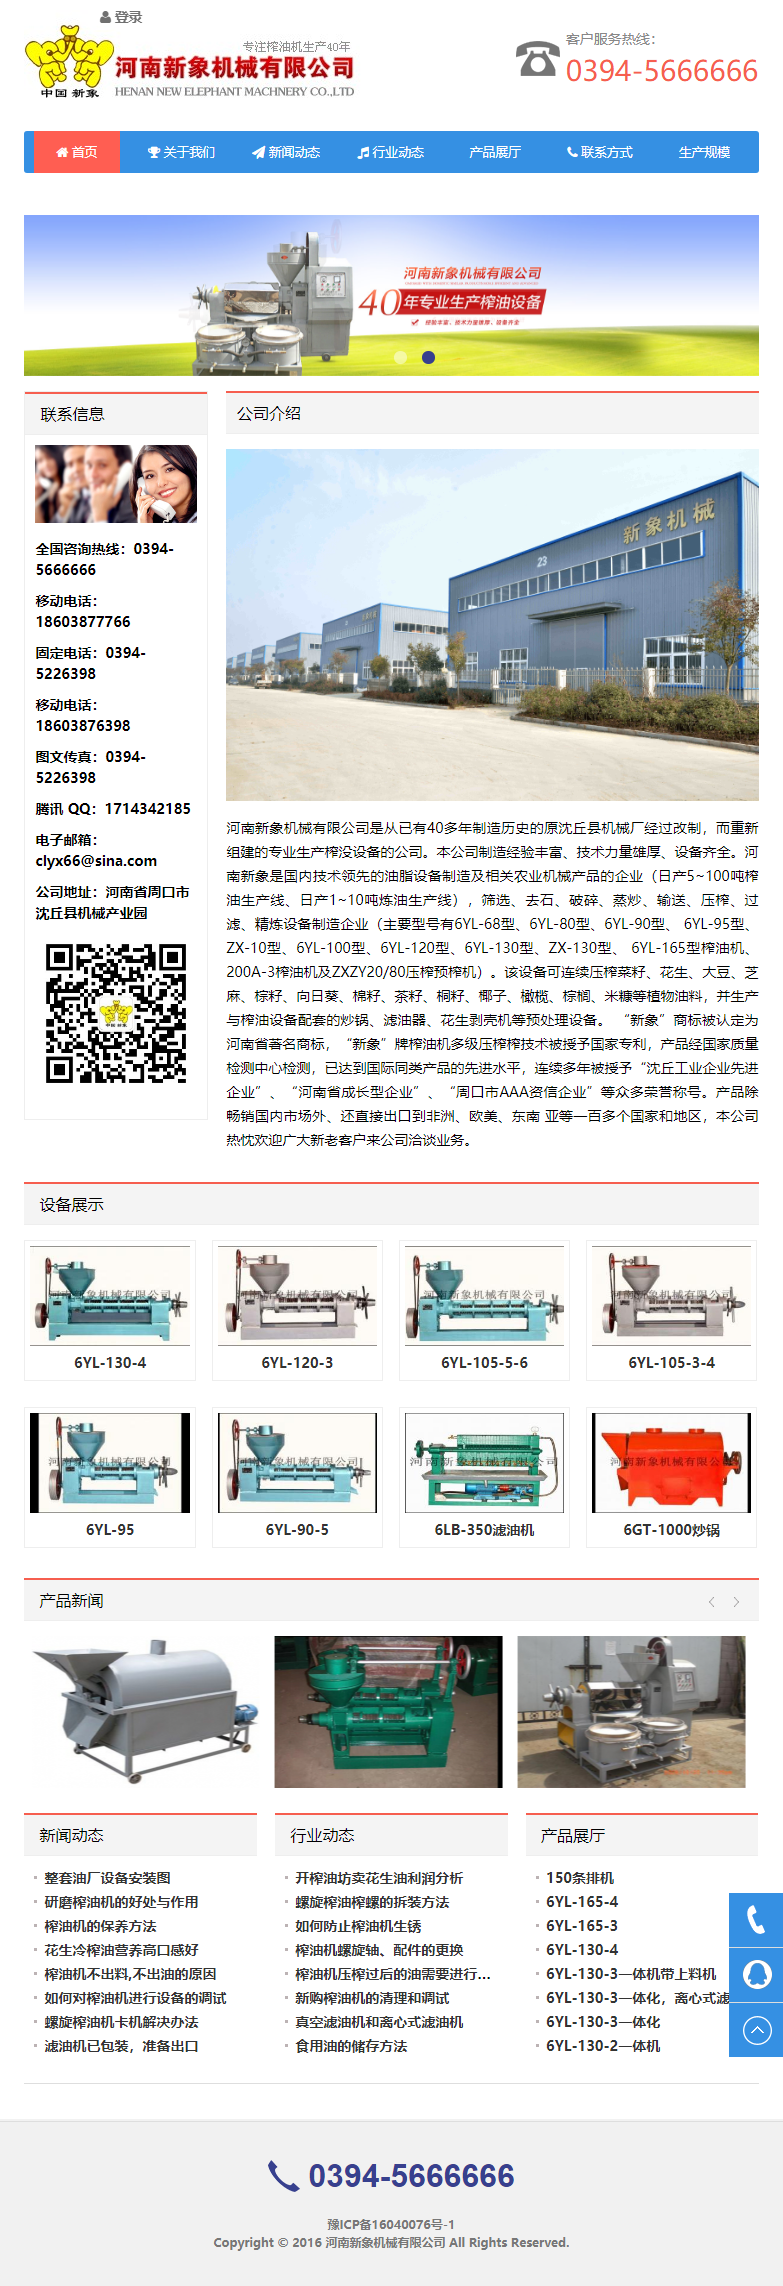 河南新象机械有限公司网站案例